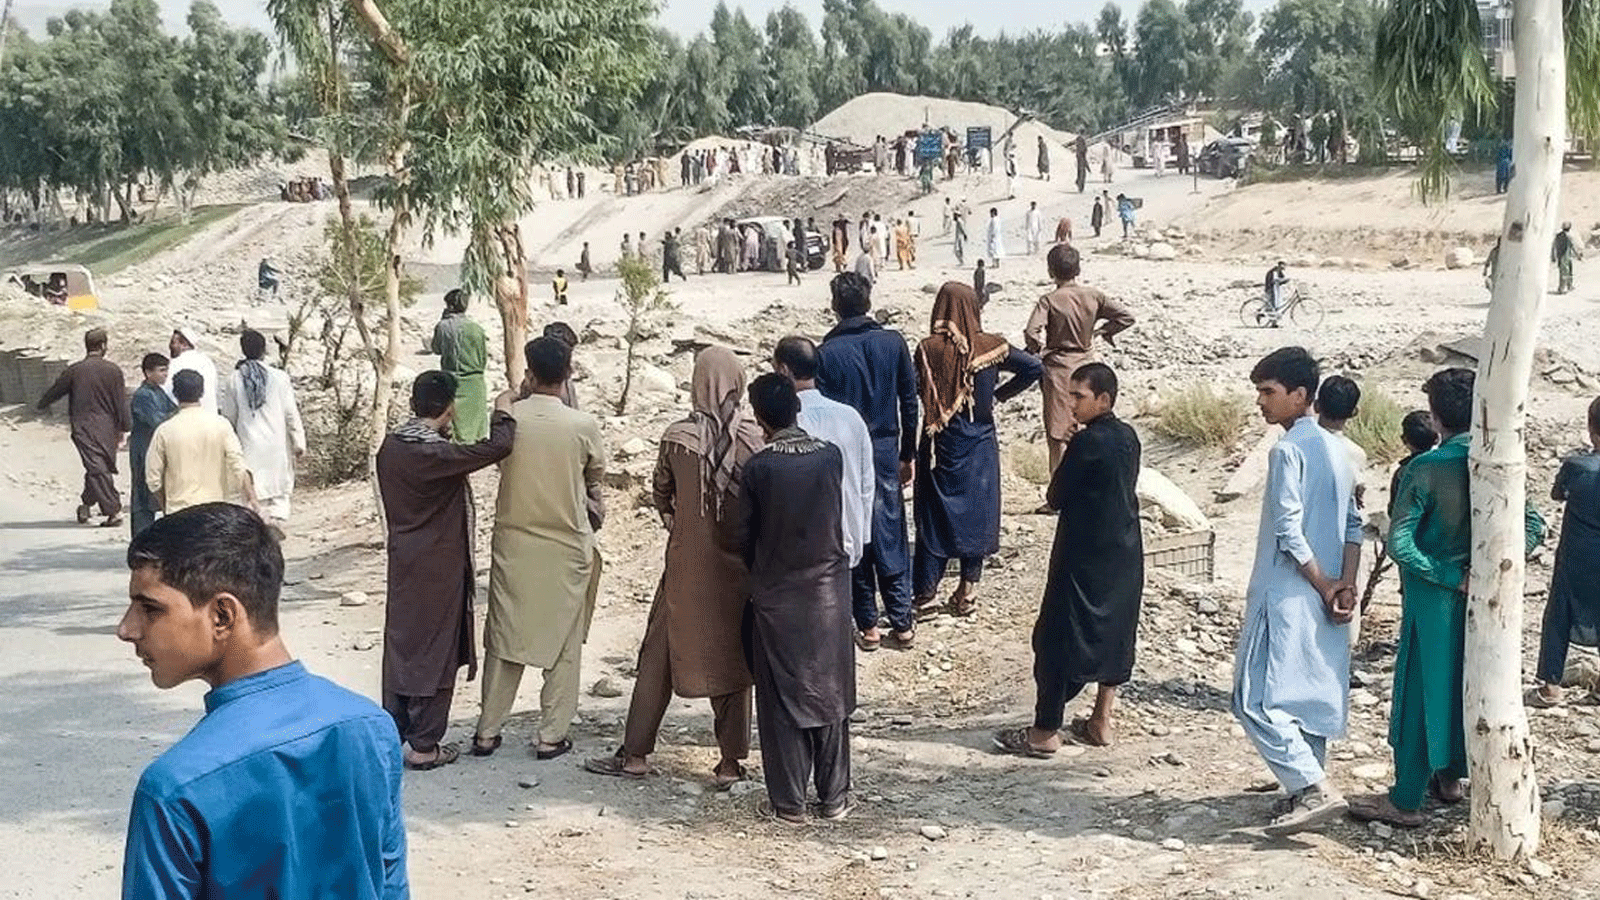 عناصر وأفراد من طالبان يتجمعون في موقع انفجار قنبلة استهدفت شاحنة صغيرة تقل مقاتلي طالبان في جلال آباد في 19 أيلول/ سبتمبر 2021